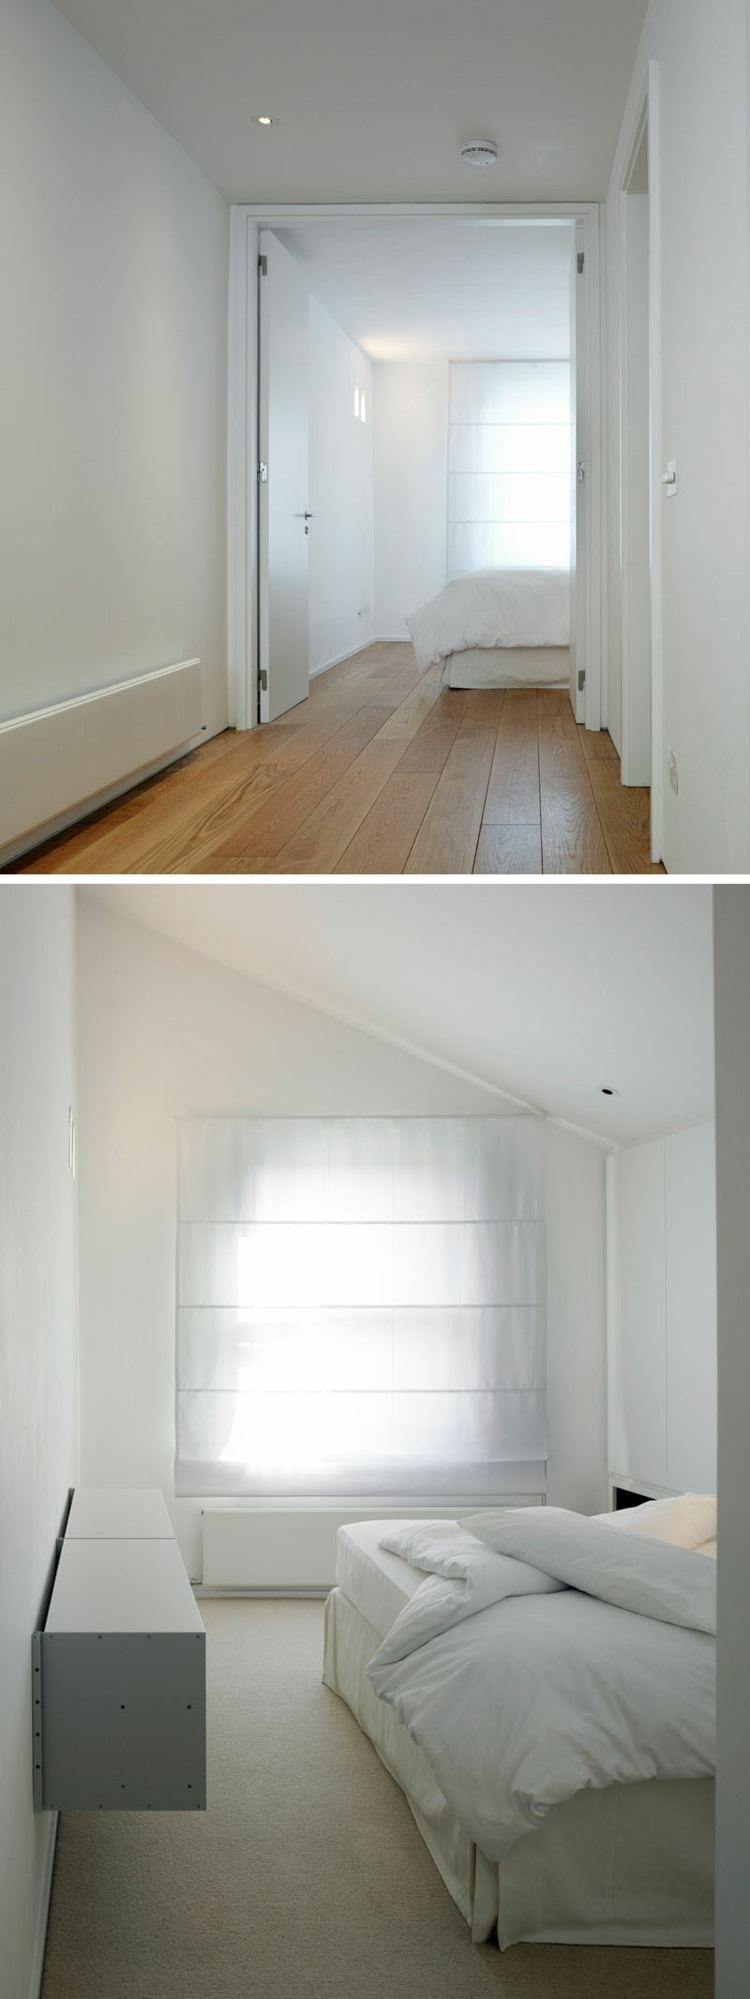 schlafzimmer-bett-weiß-minimalistisch-wandgestaltung-10